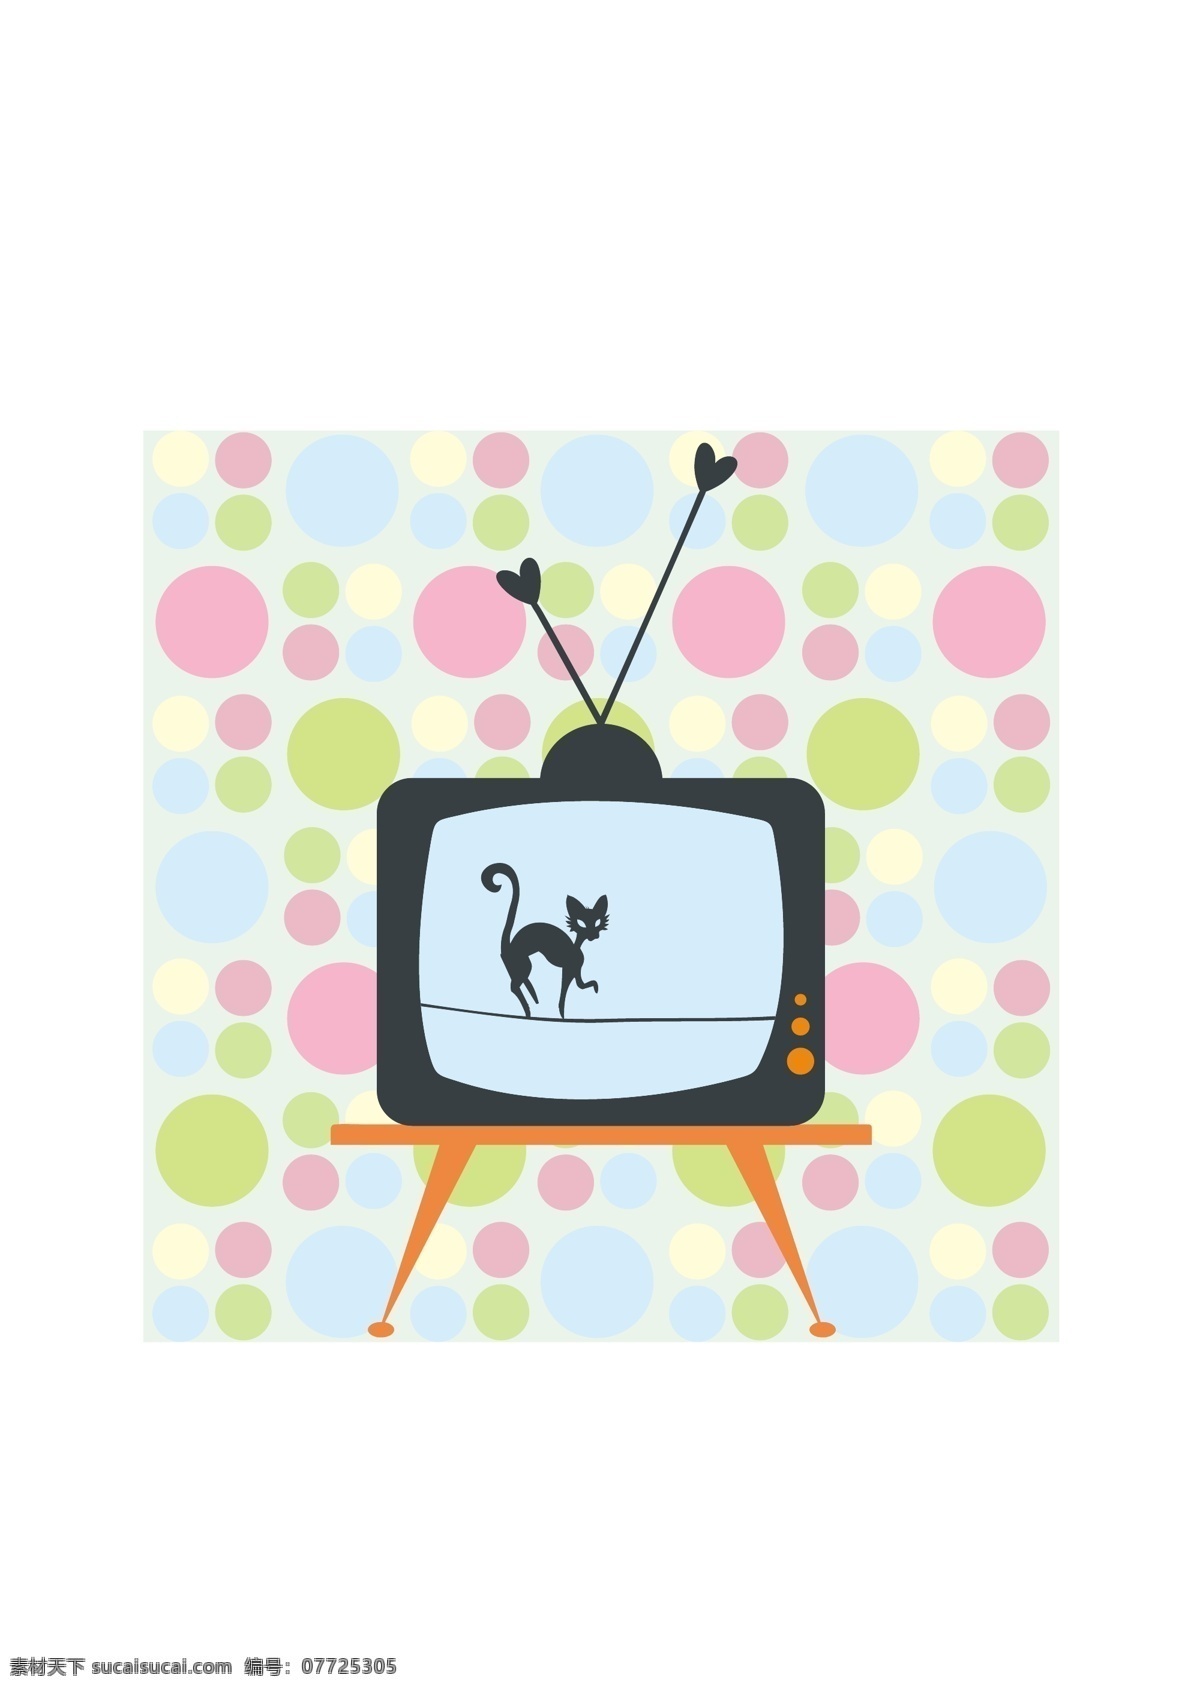 电视 里 的卡 通 猫 广告 韩国 卡通 欧美 平面 矢量 矢量图